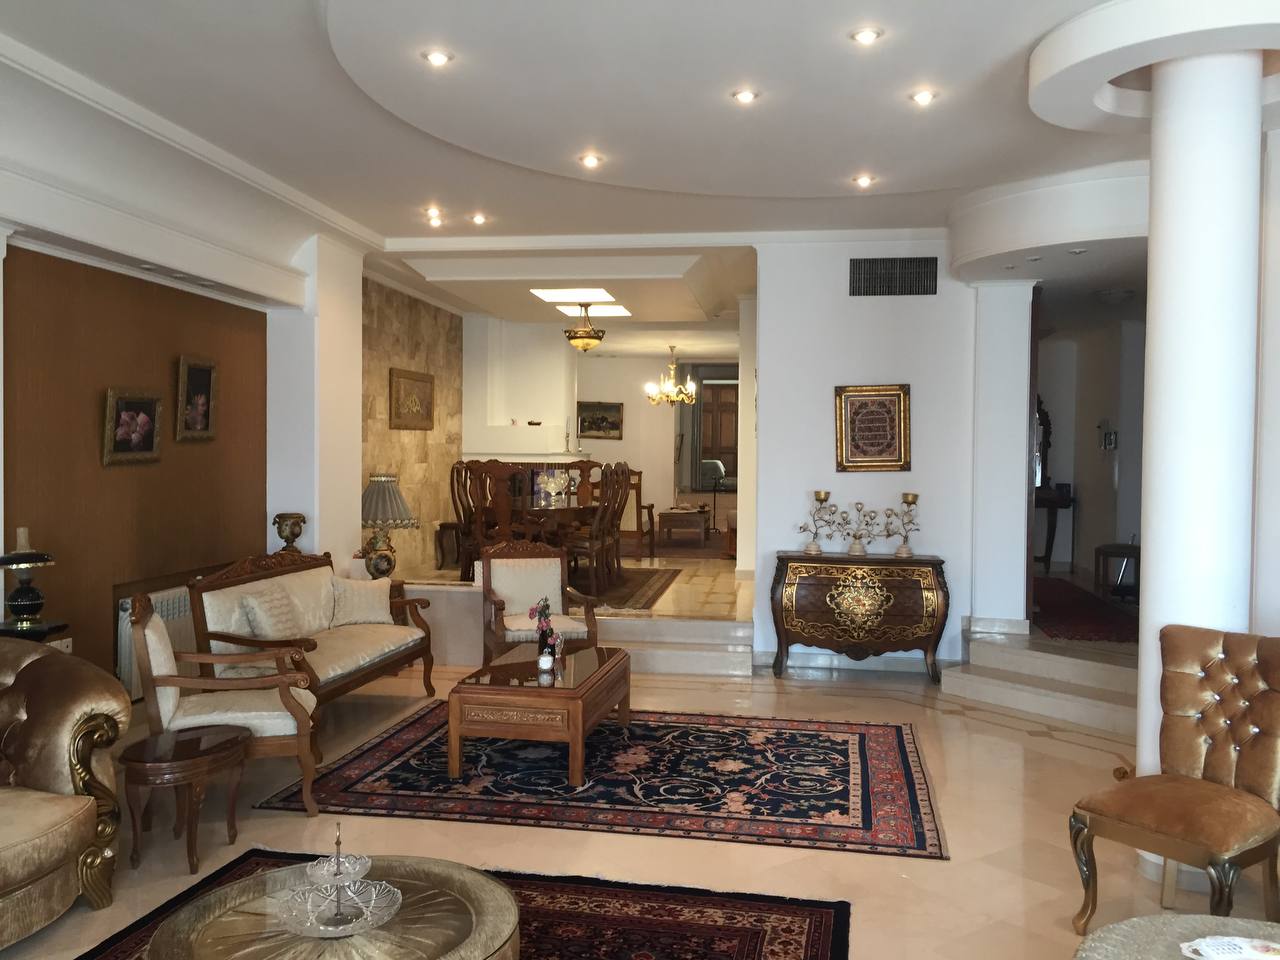 فروش آپارتمان در زعفرانیه خیابان علی حسینی یا مهر سابق با 285 متر